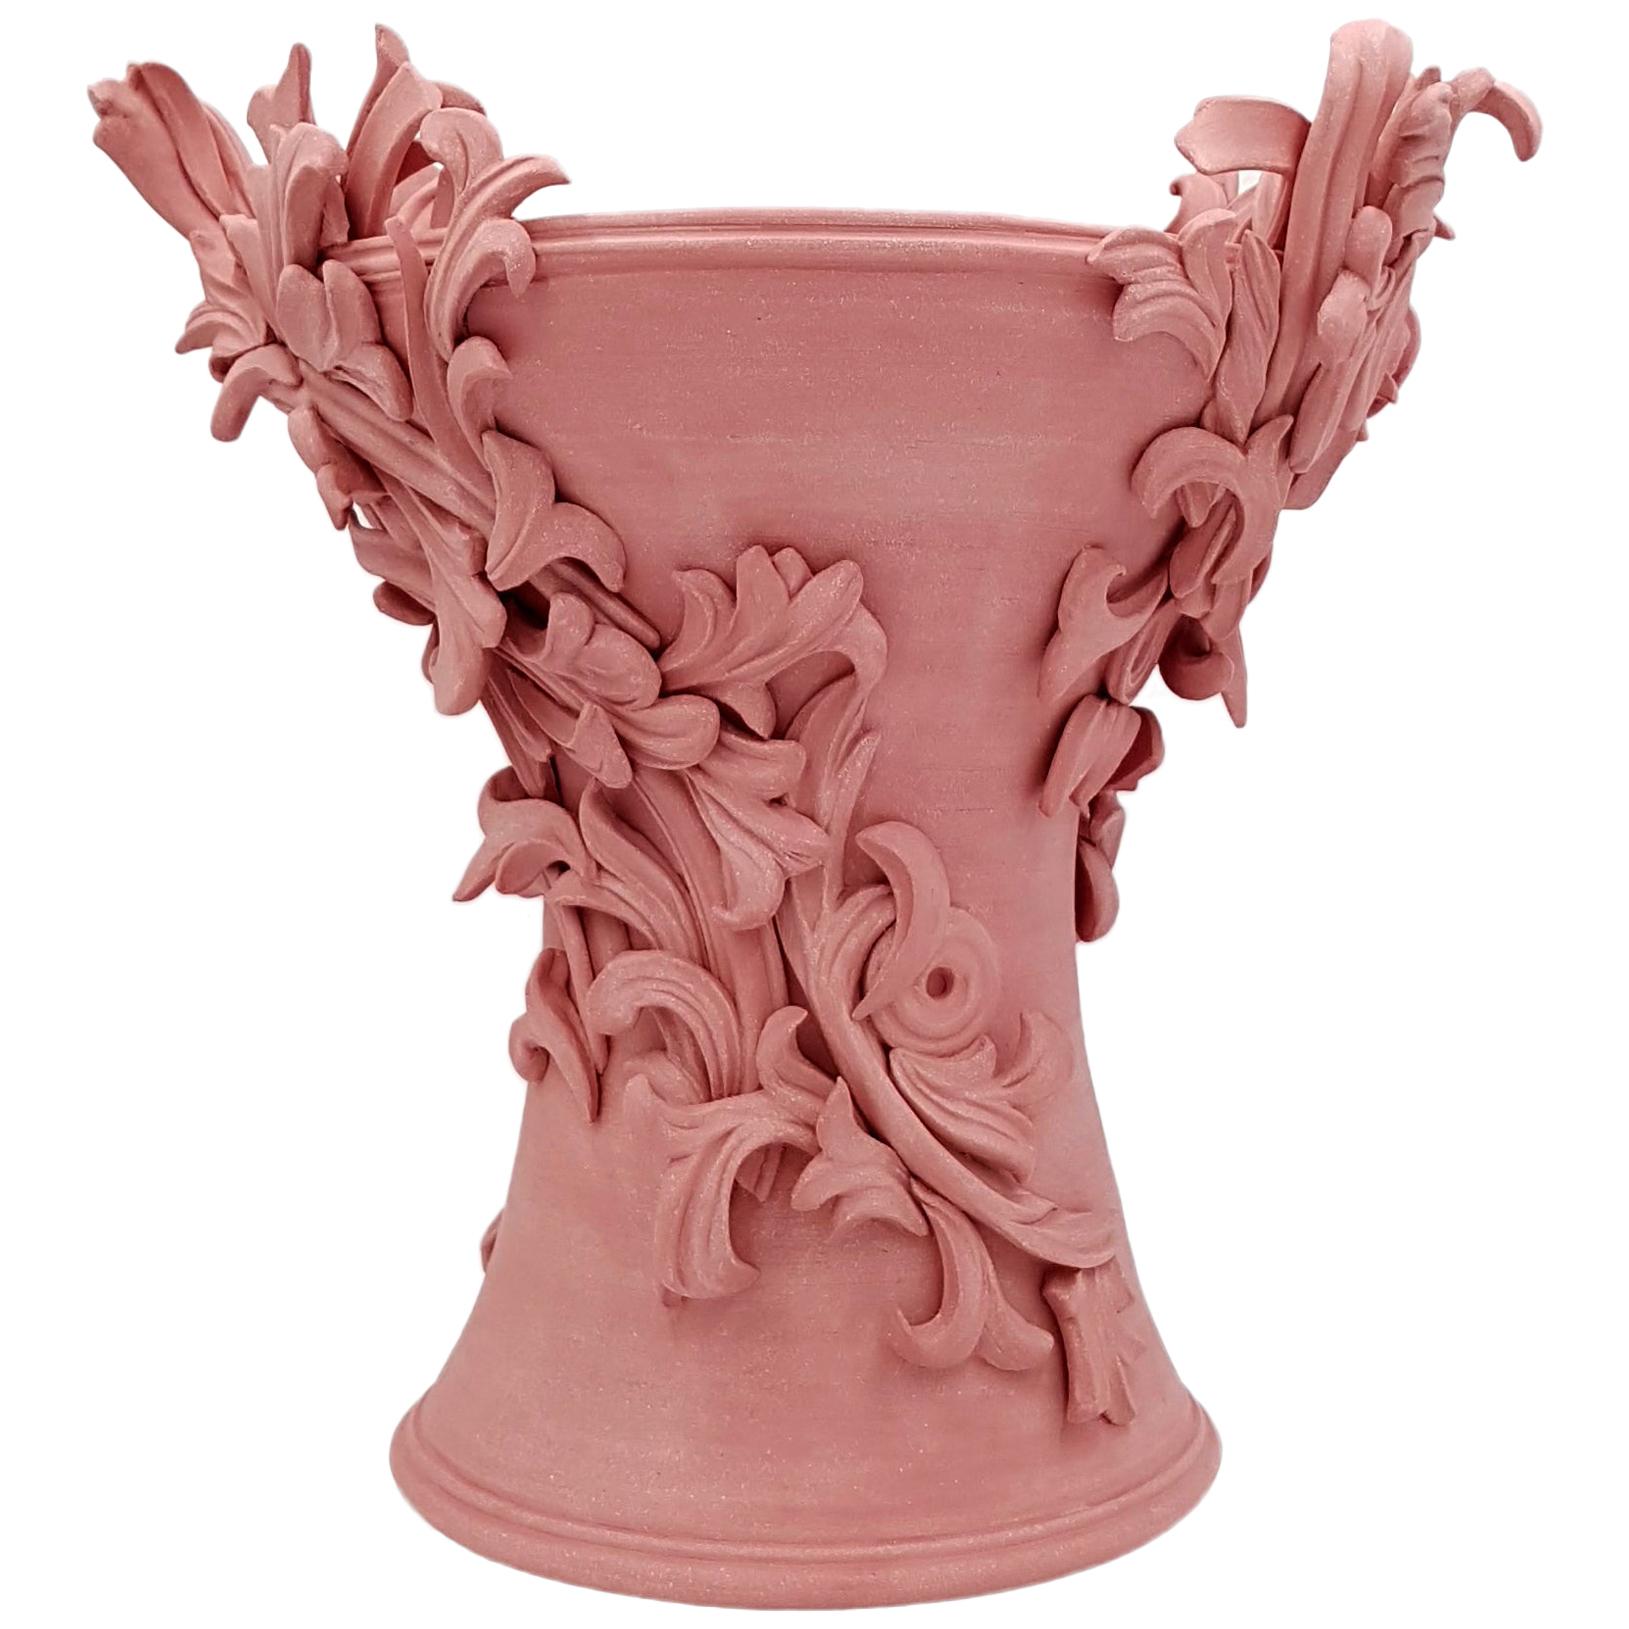 Vari Capitelli V, a Unique Ceramic Vase in Vibrant Salmon Pink by Jo Taylor